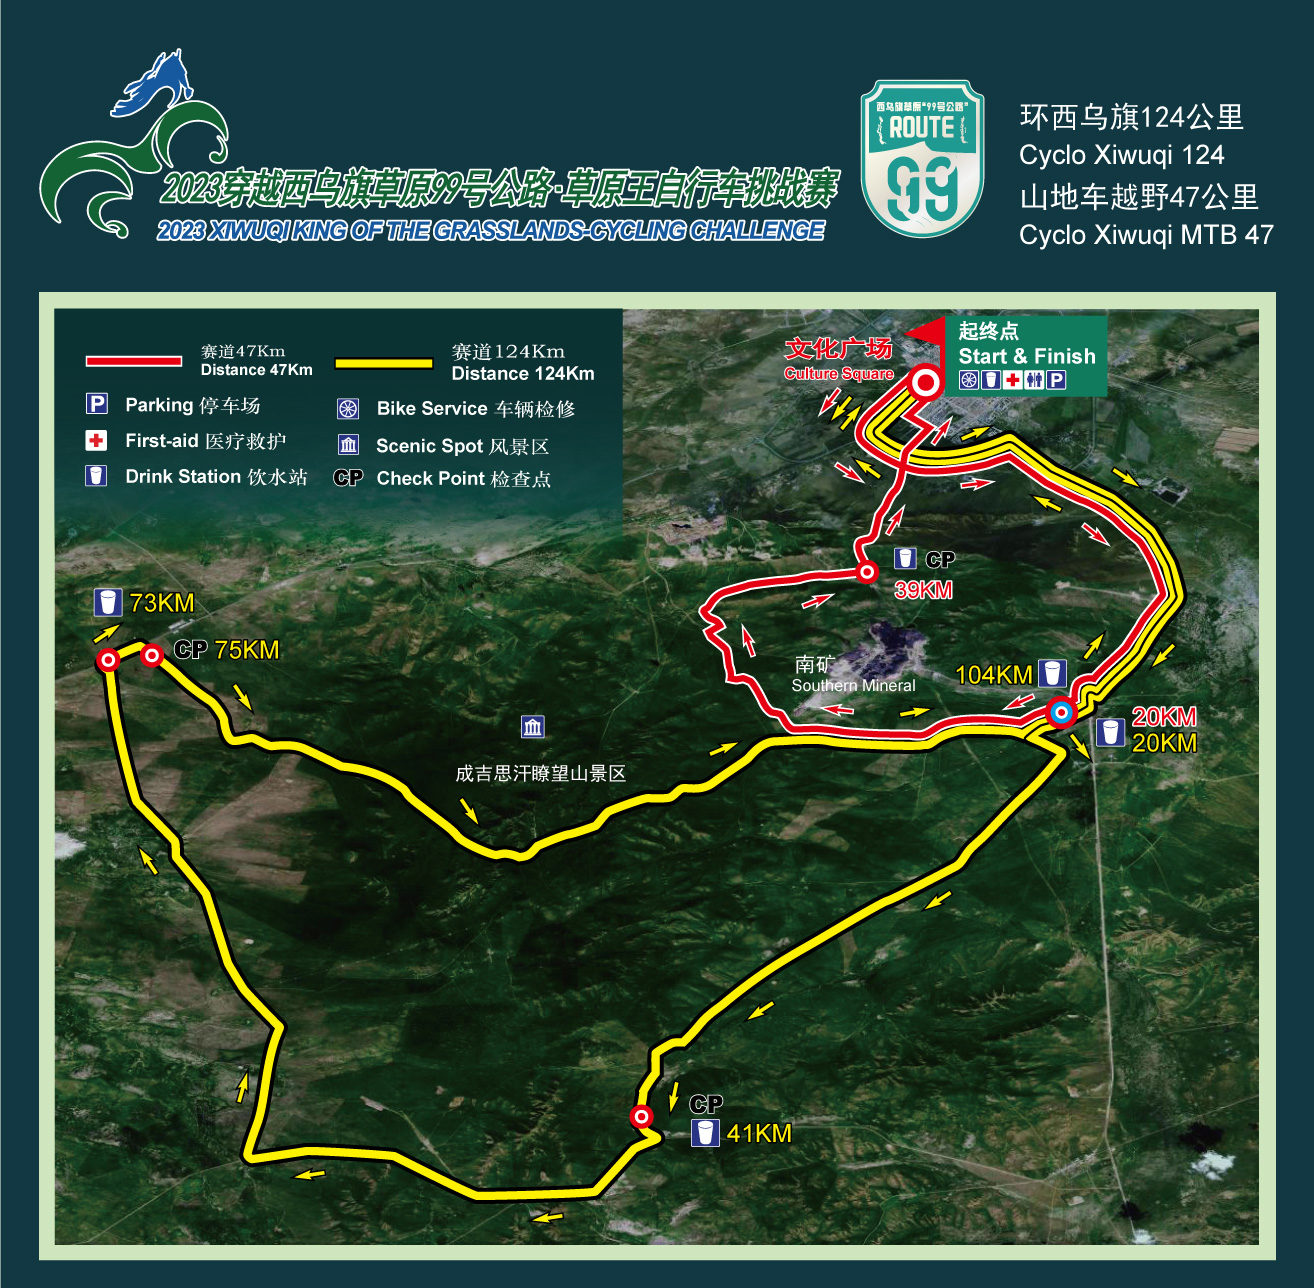 Xiwuqi 124 km course map